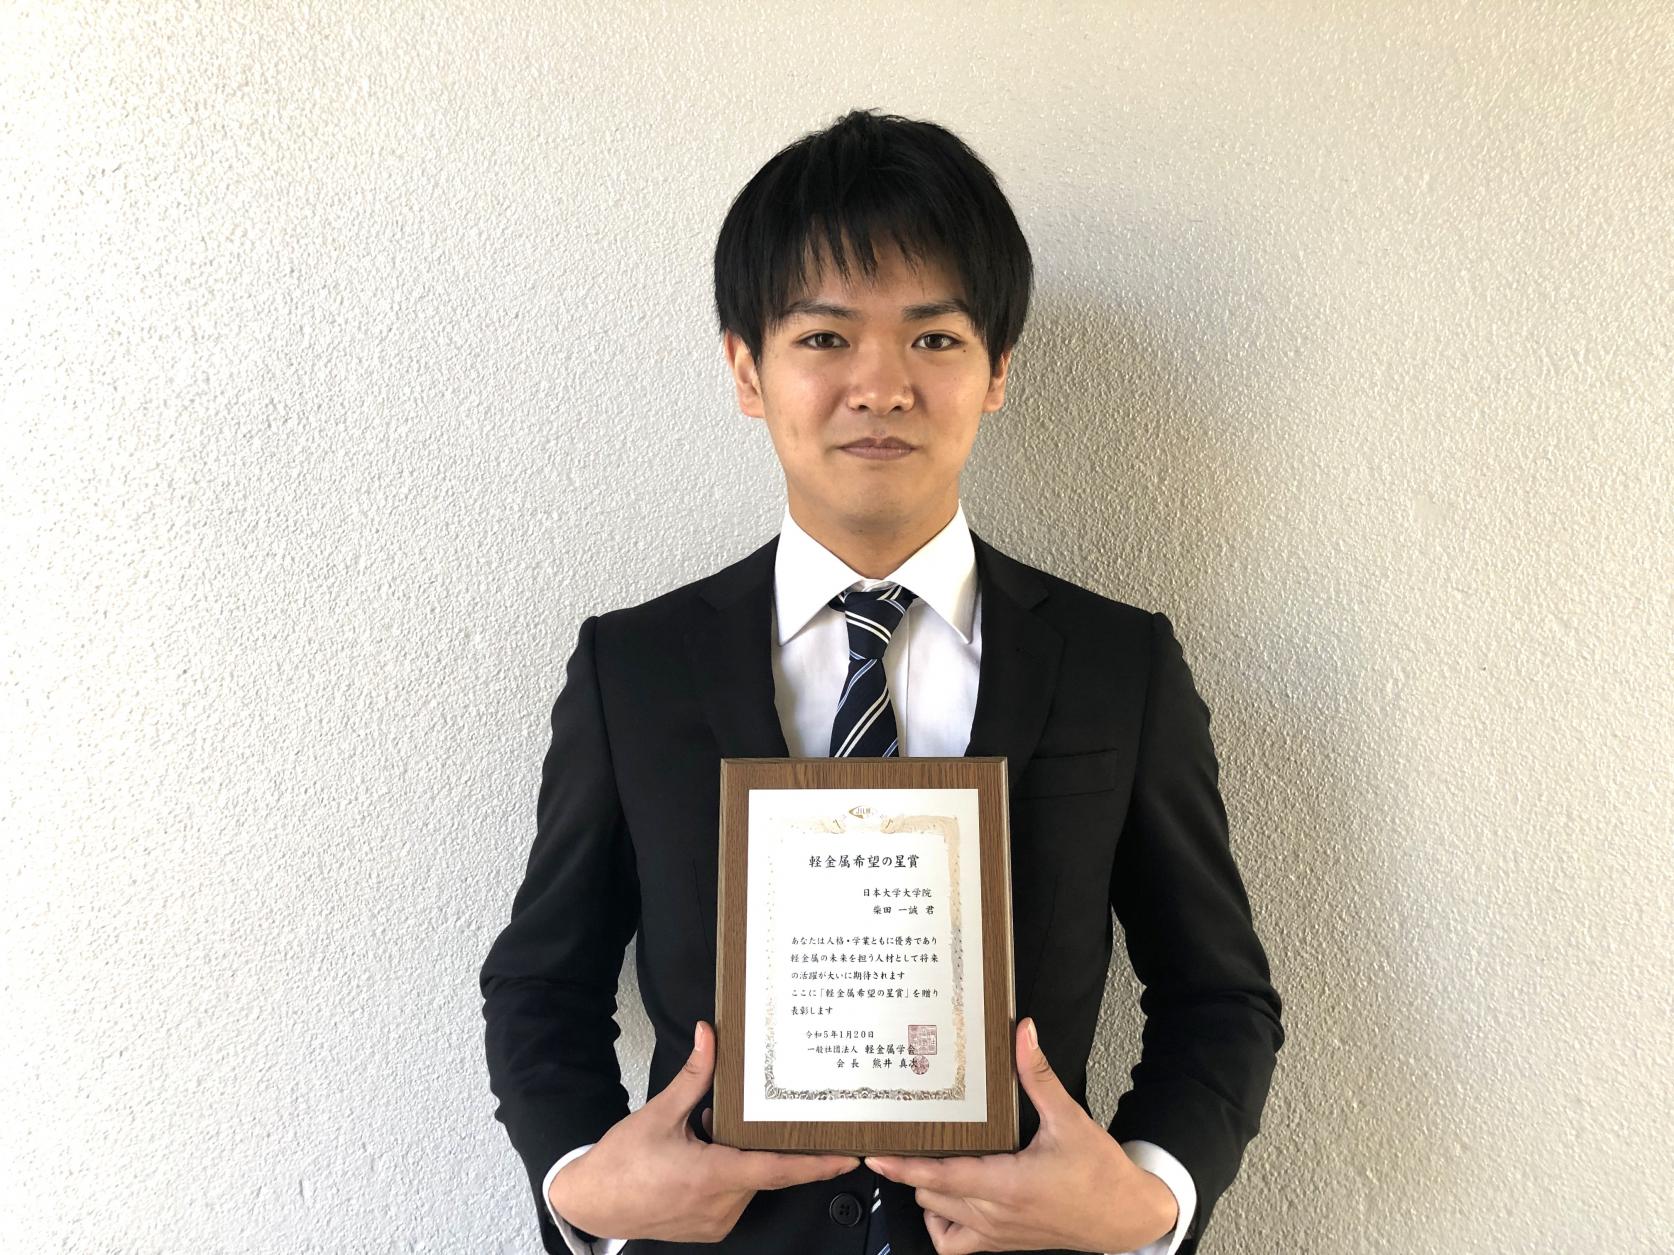 精密機械工学専攻2年の柴田一誠さんが、軽金属学会において、軽金属希望の星賞を受賞しました。